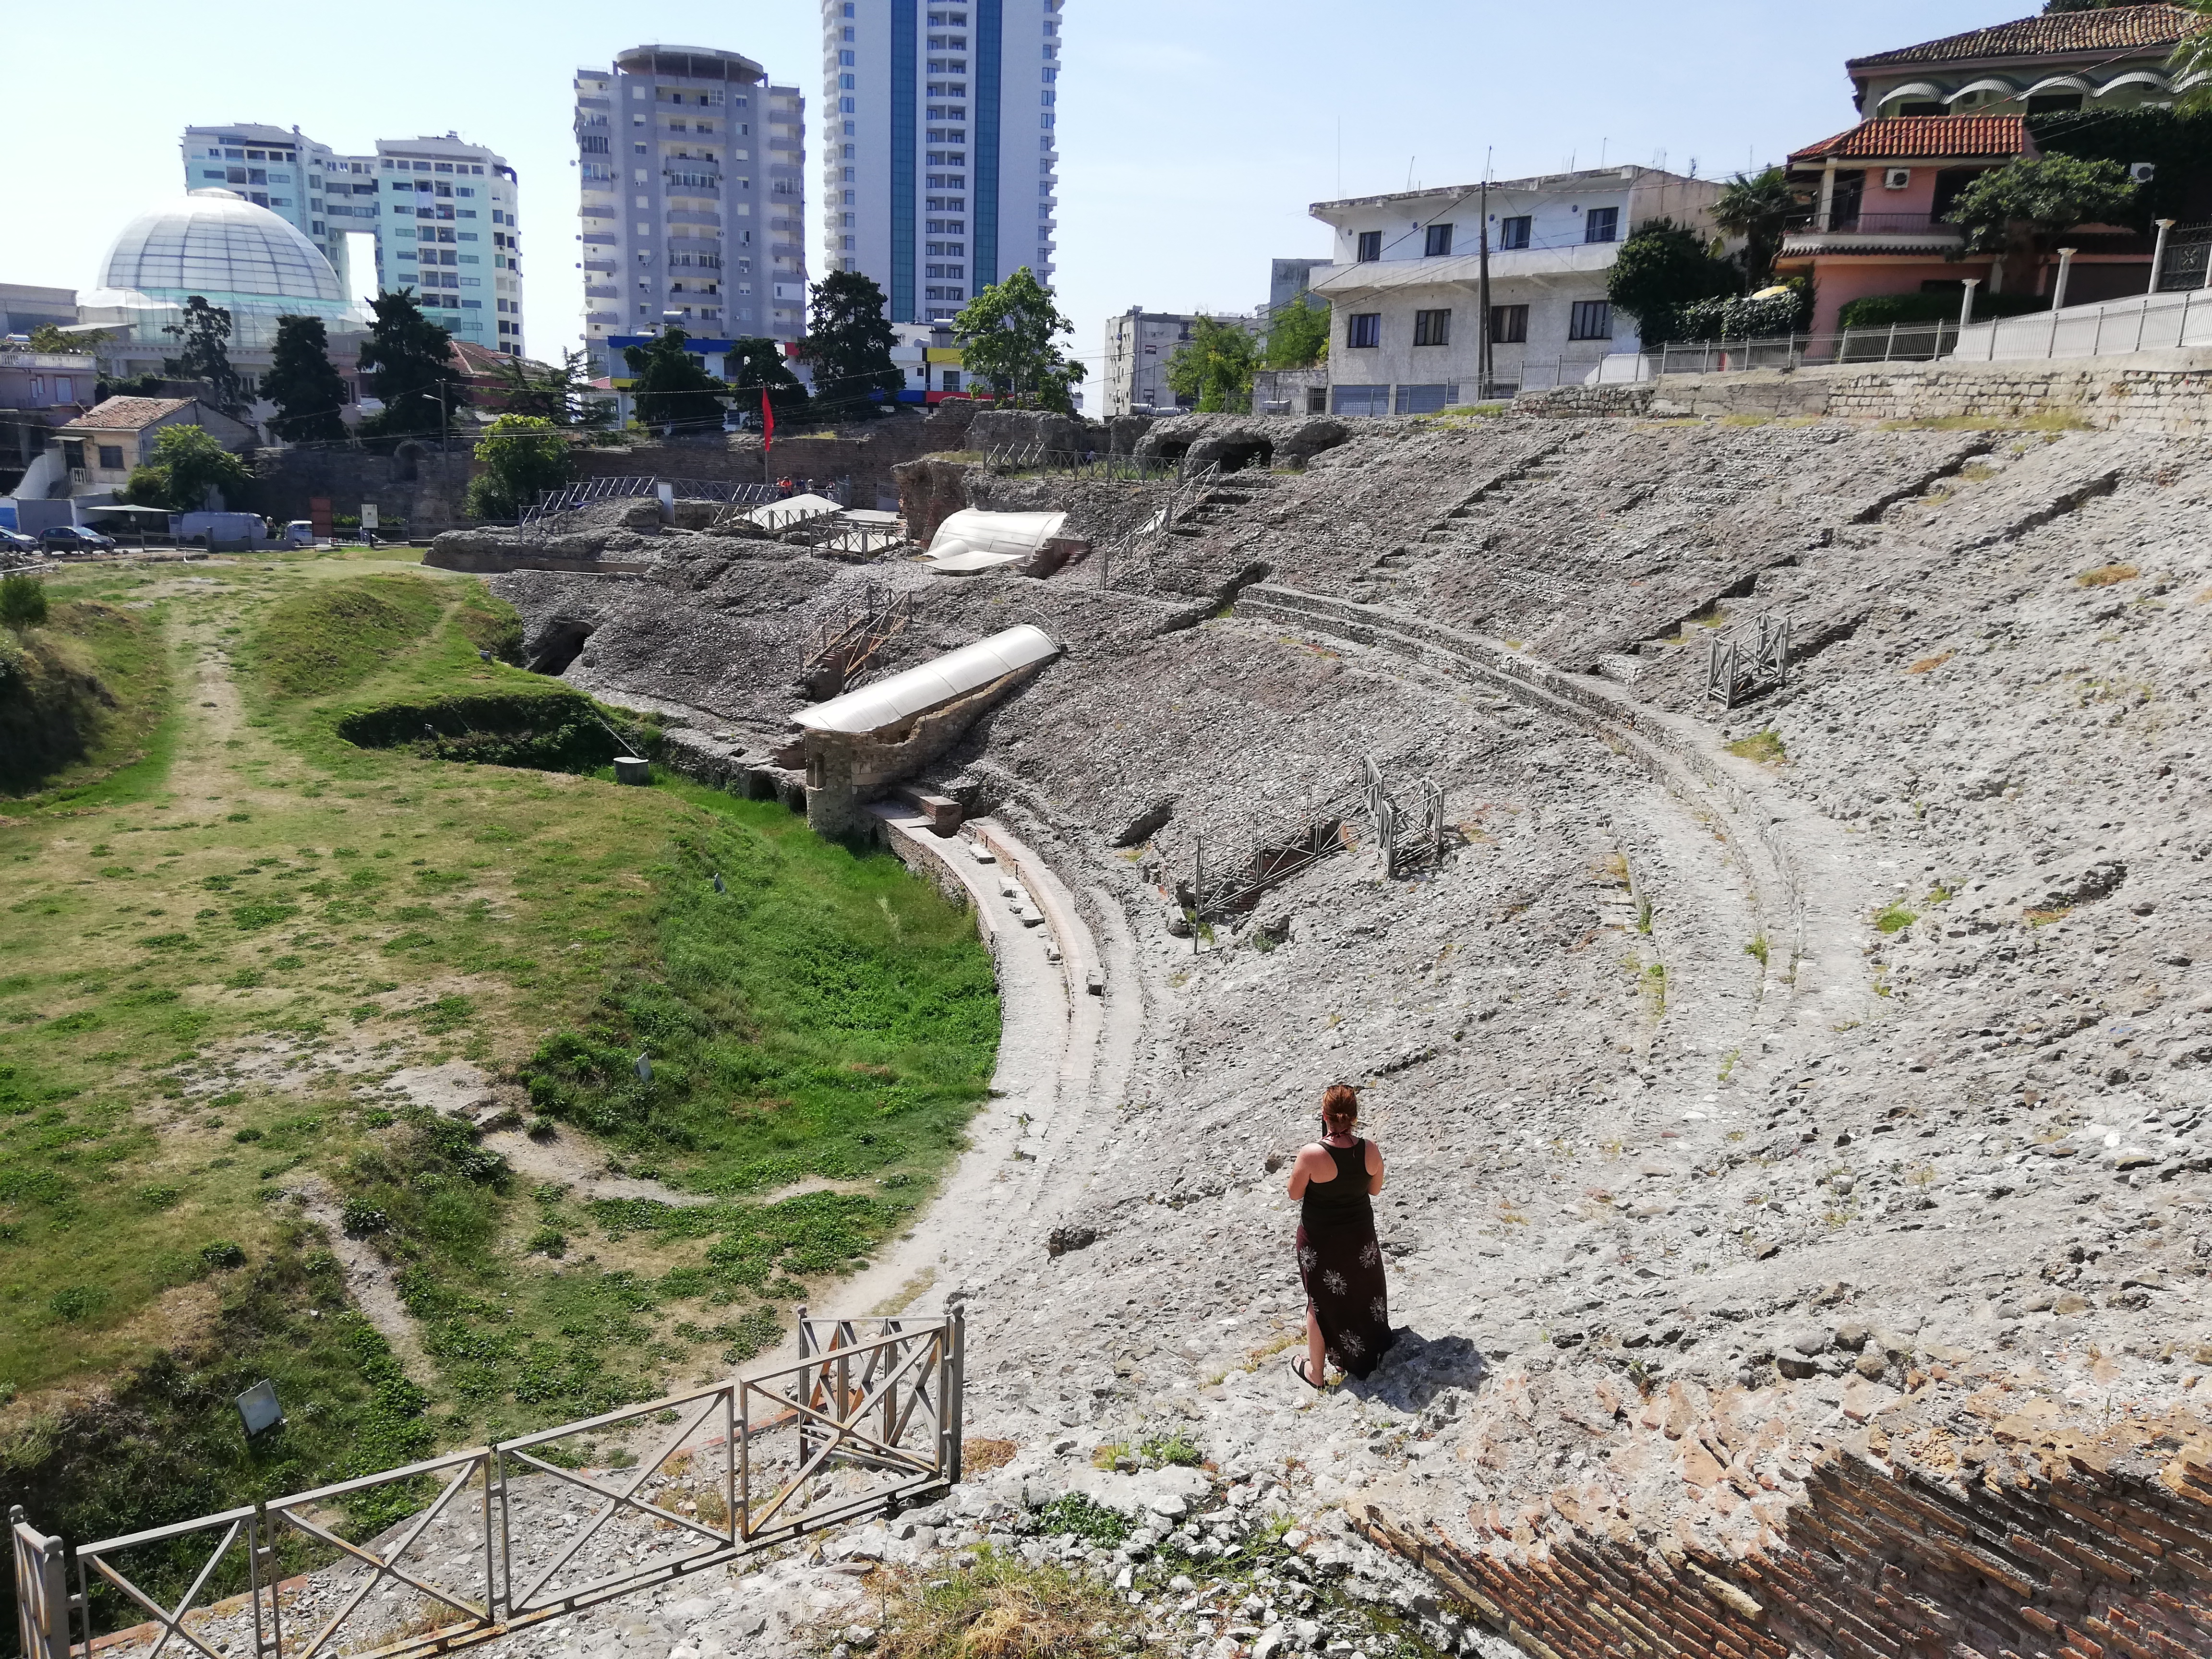 Amphitheater Durres Albanien 